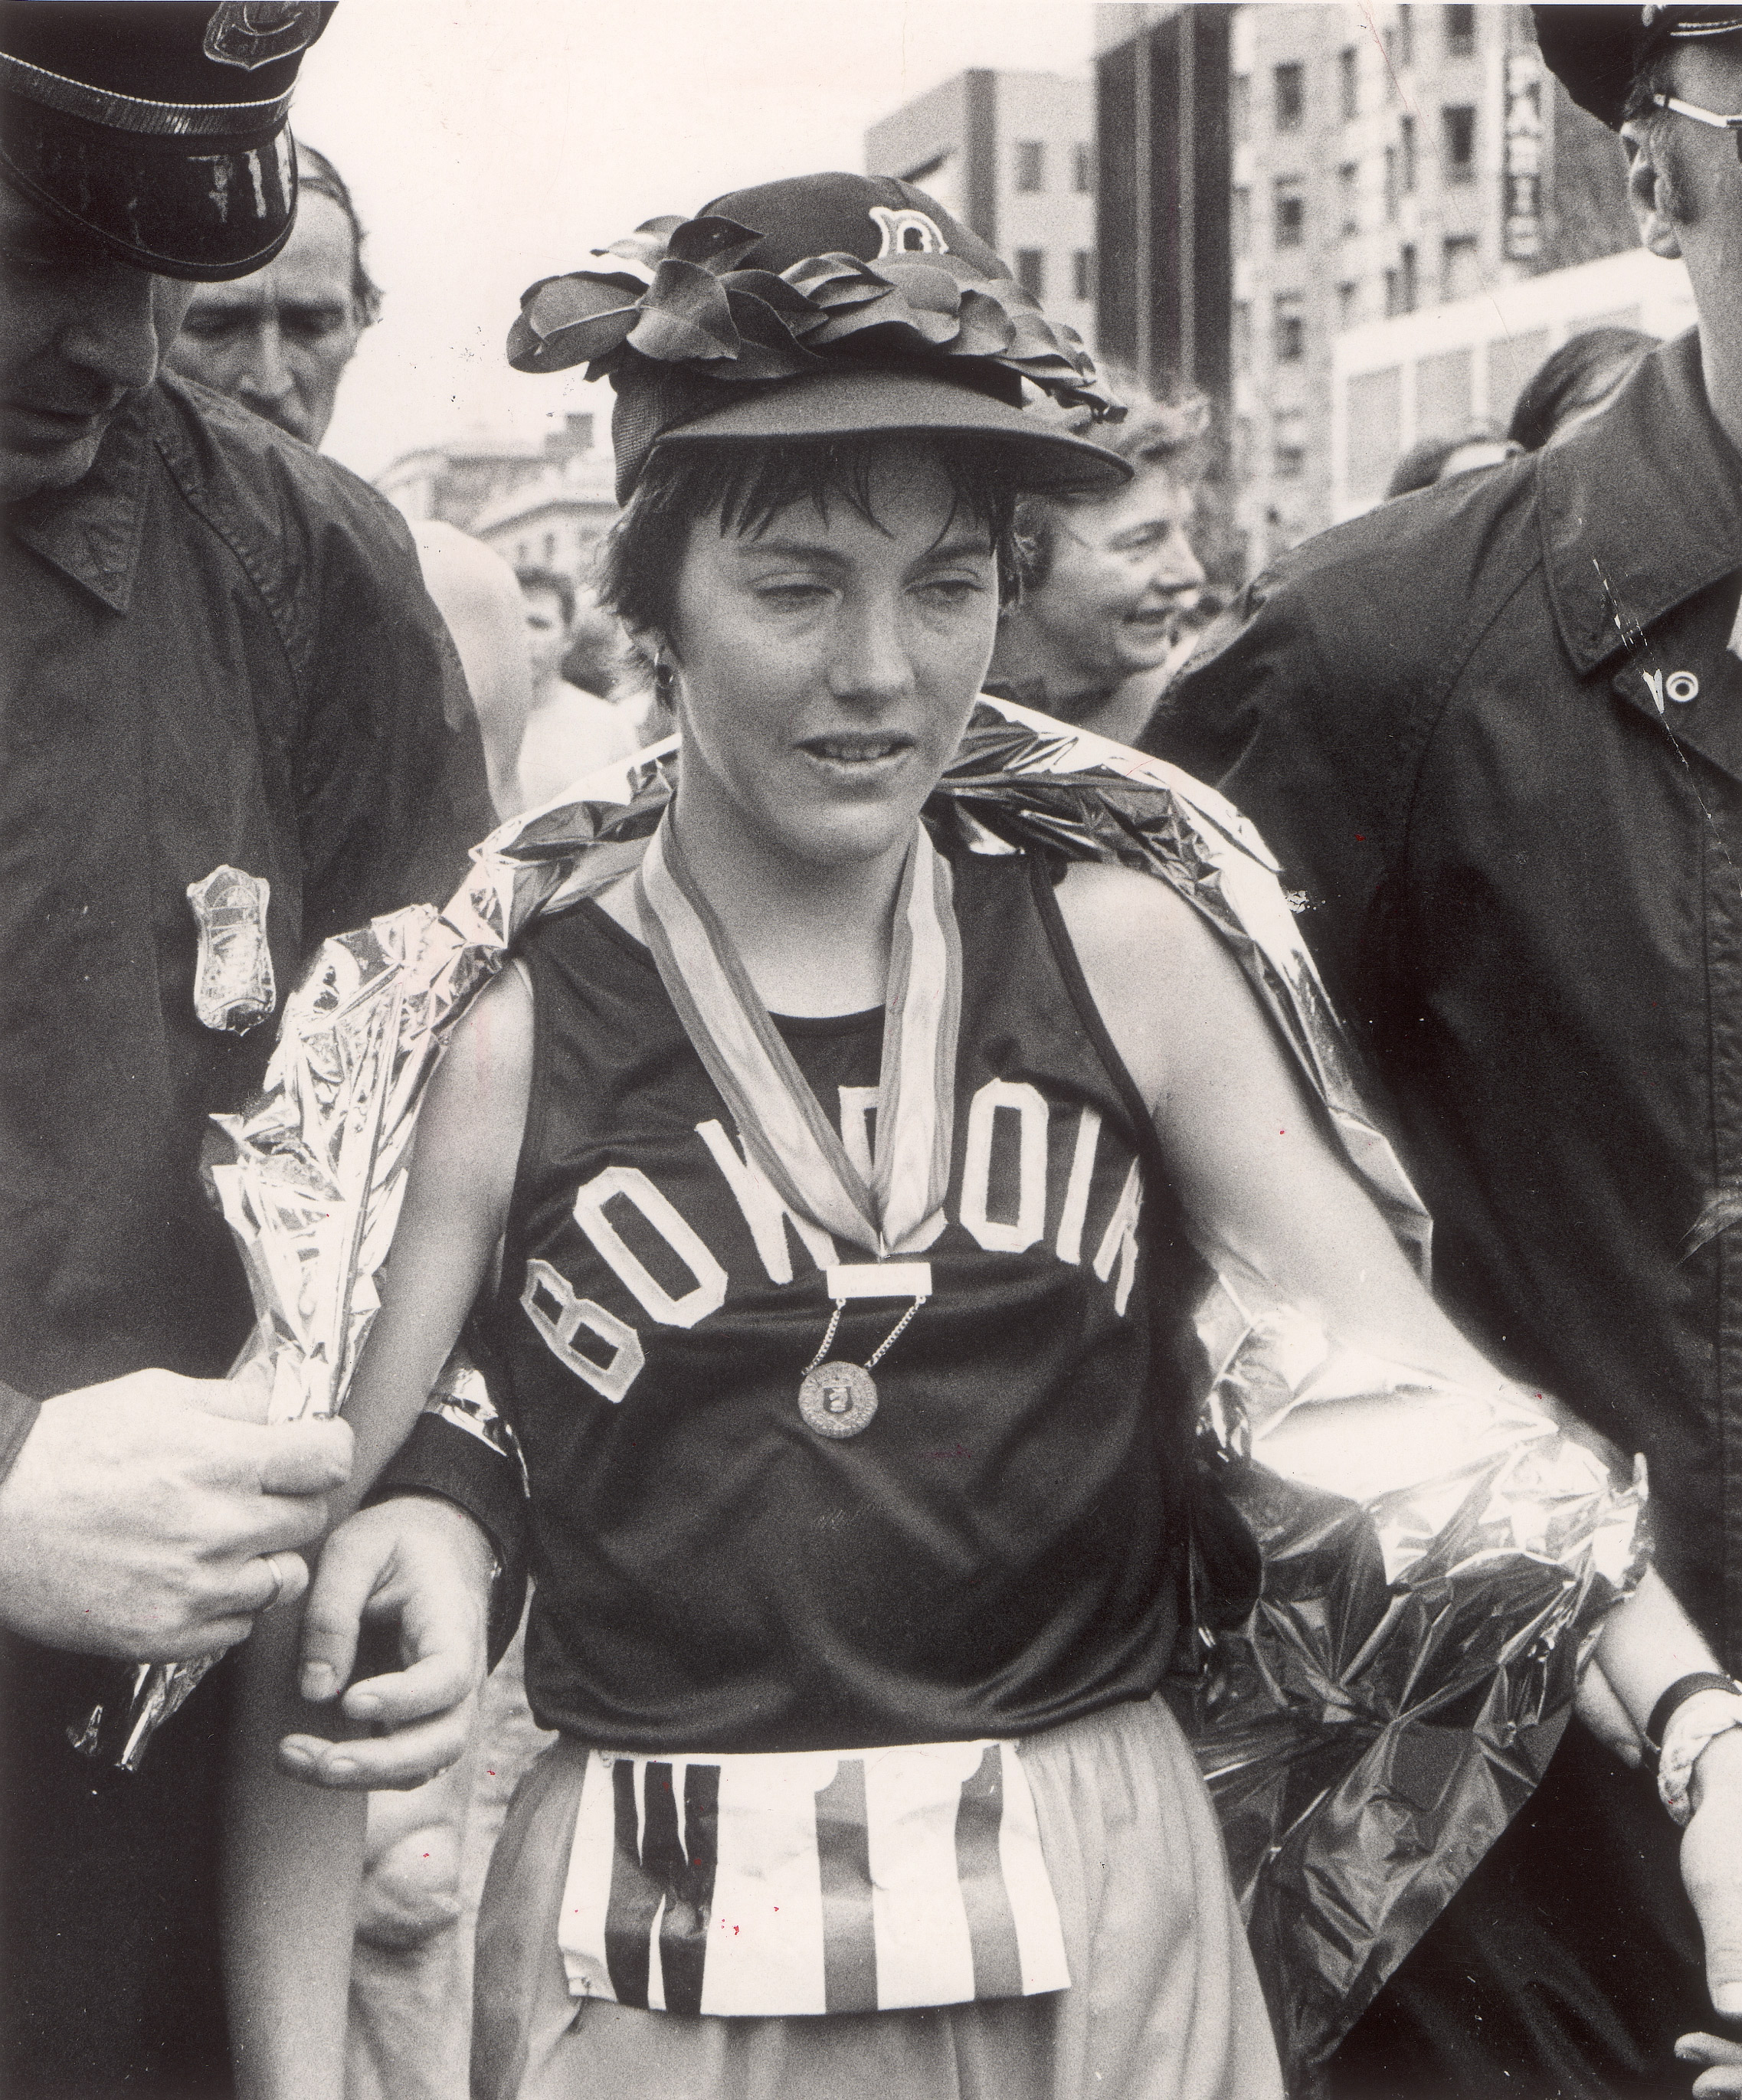 Joan Benoit, the women's winner of the Boston Marathon, April 16, 1979.